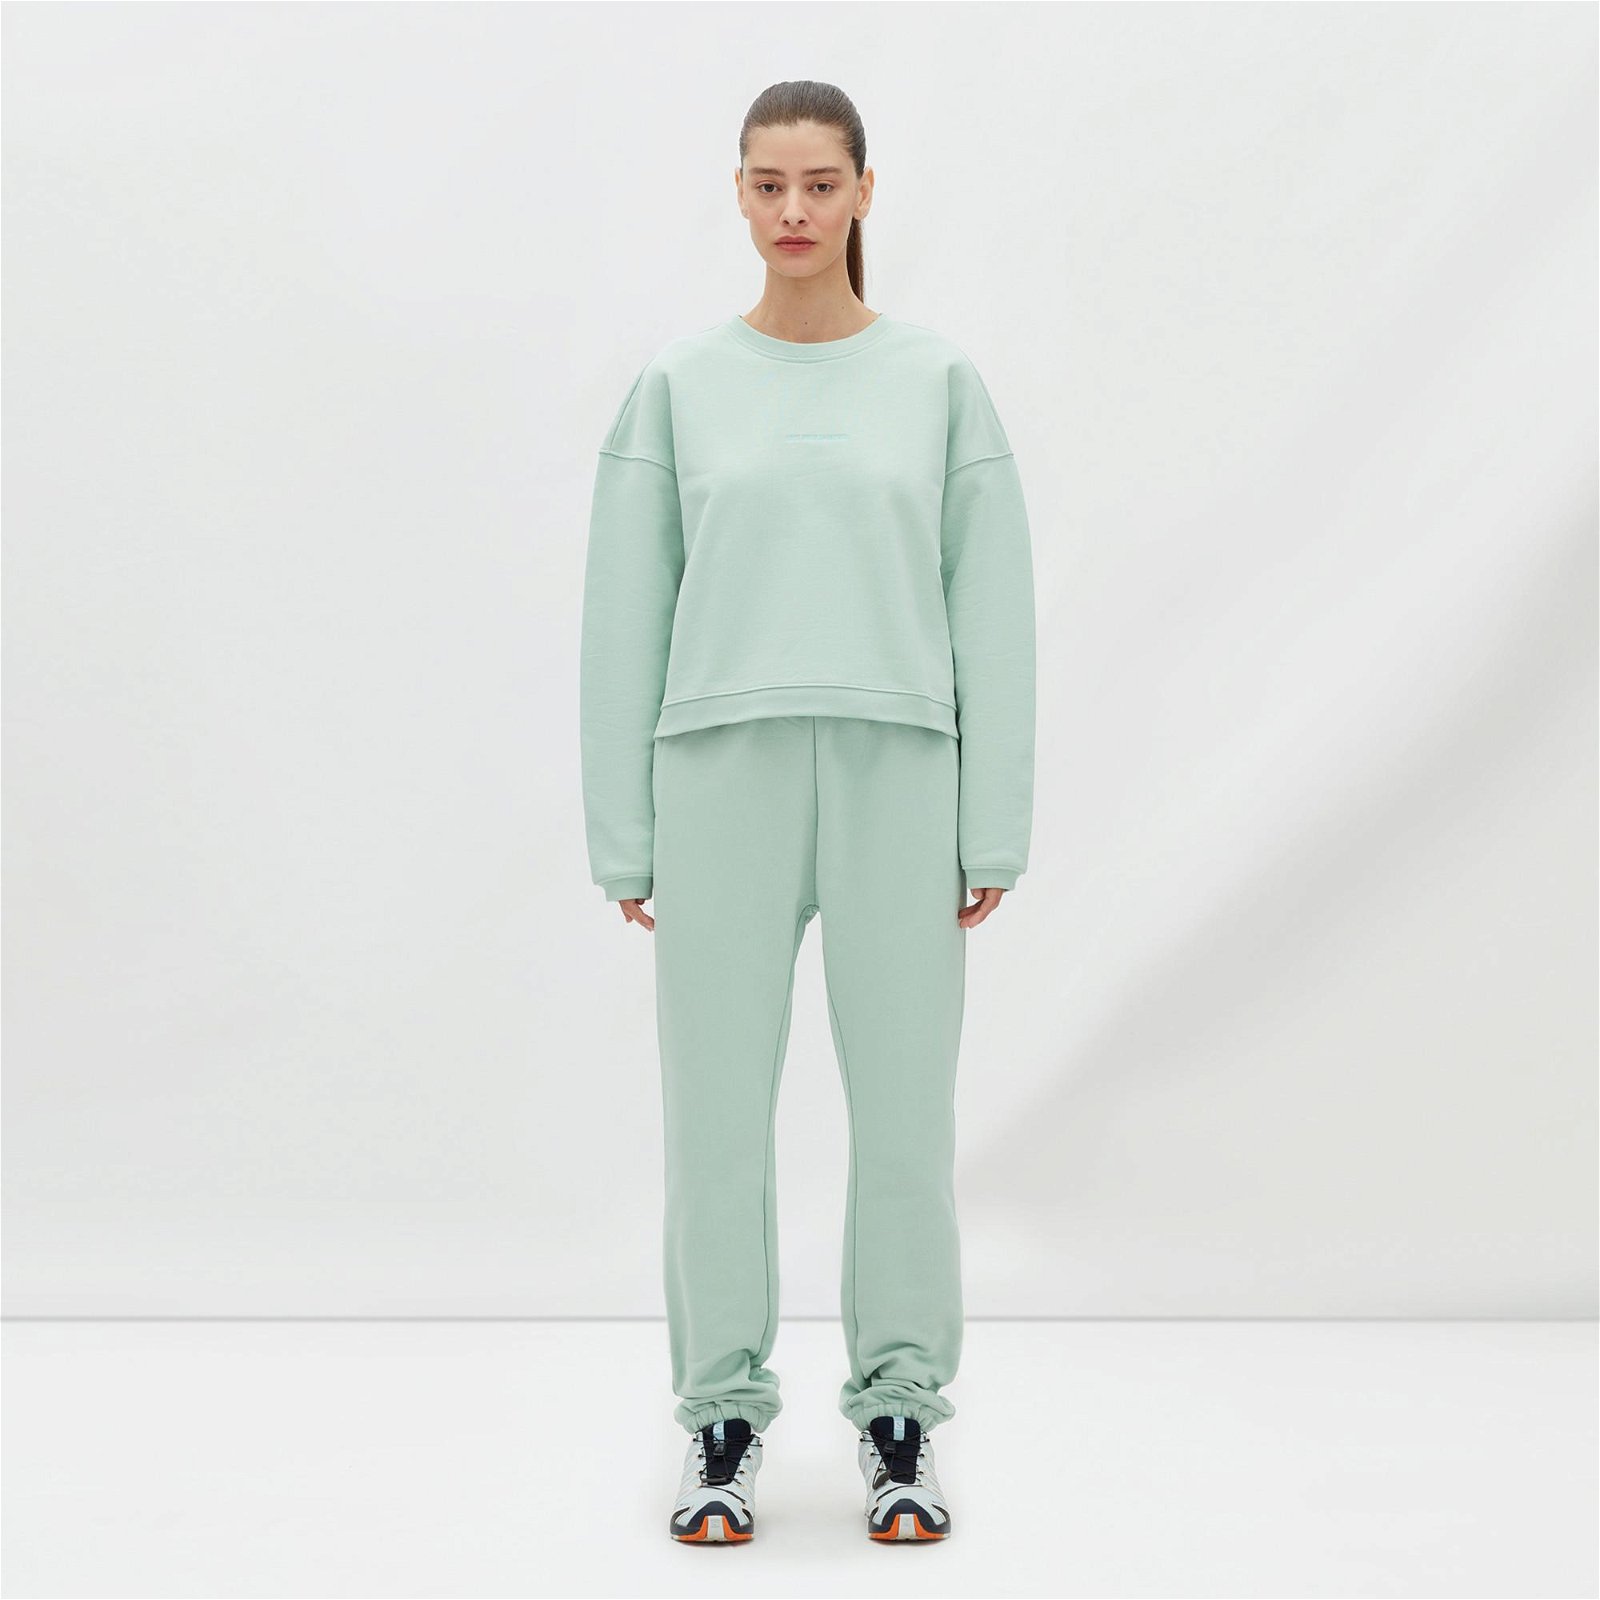 Les Benjamins 303 Kadın Yeşil Sweatshirt